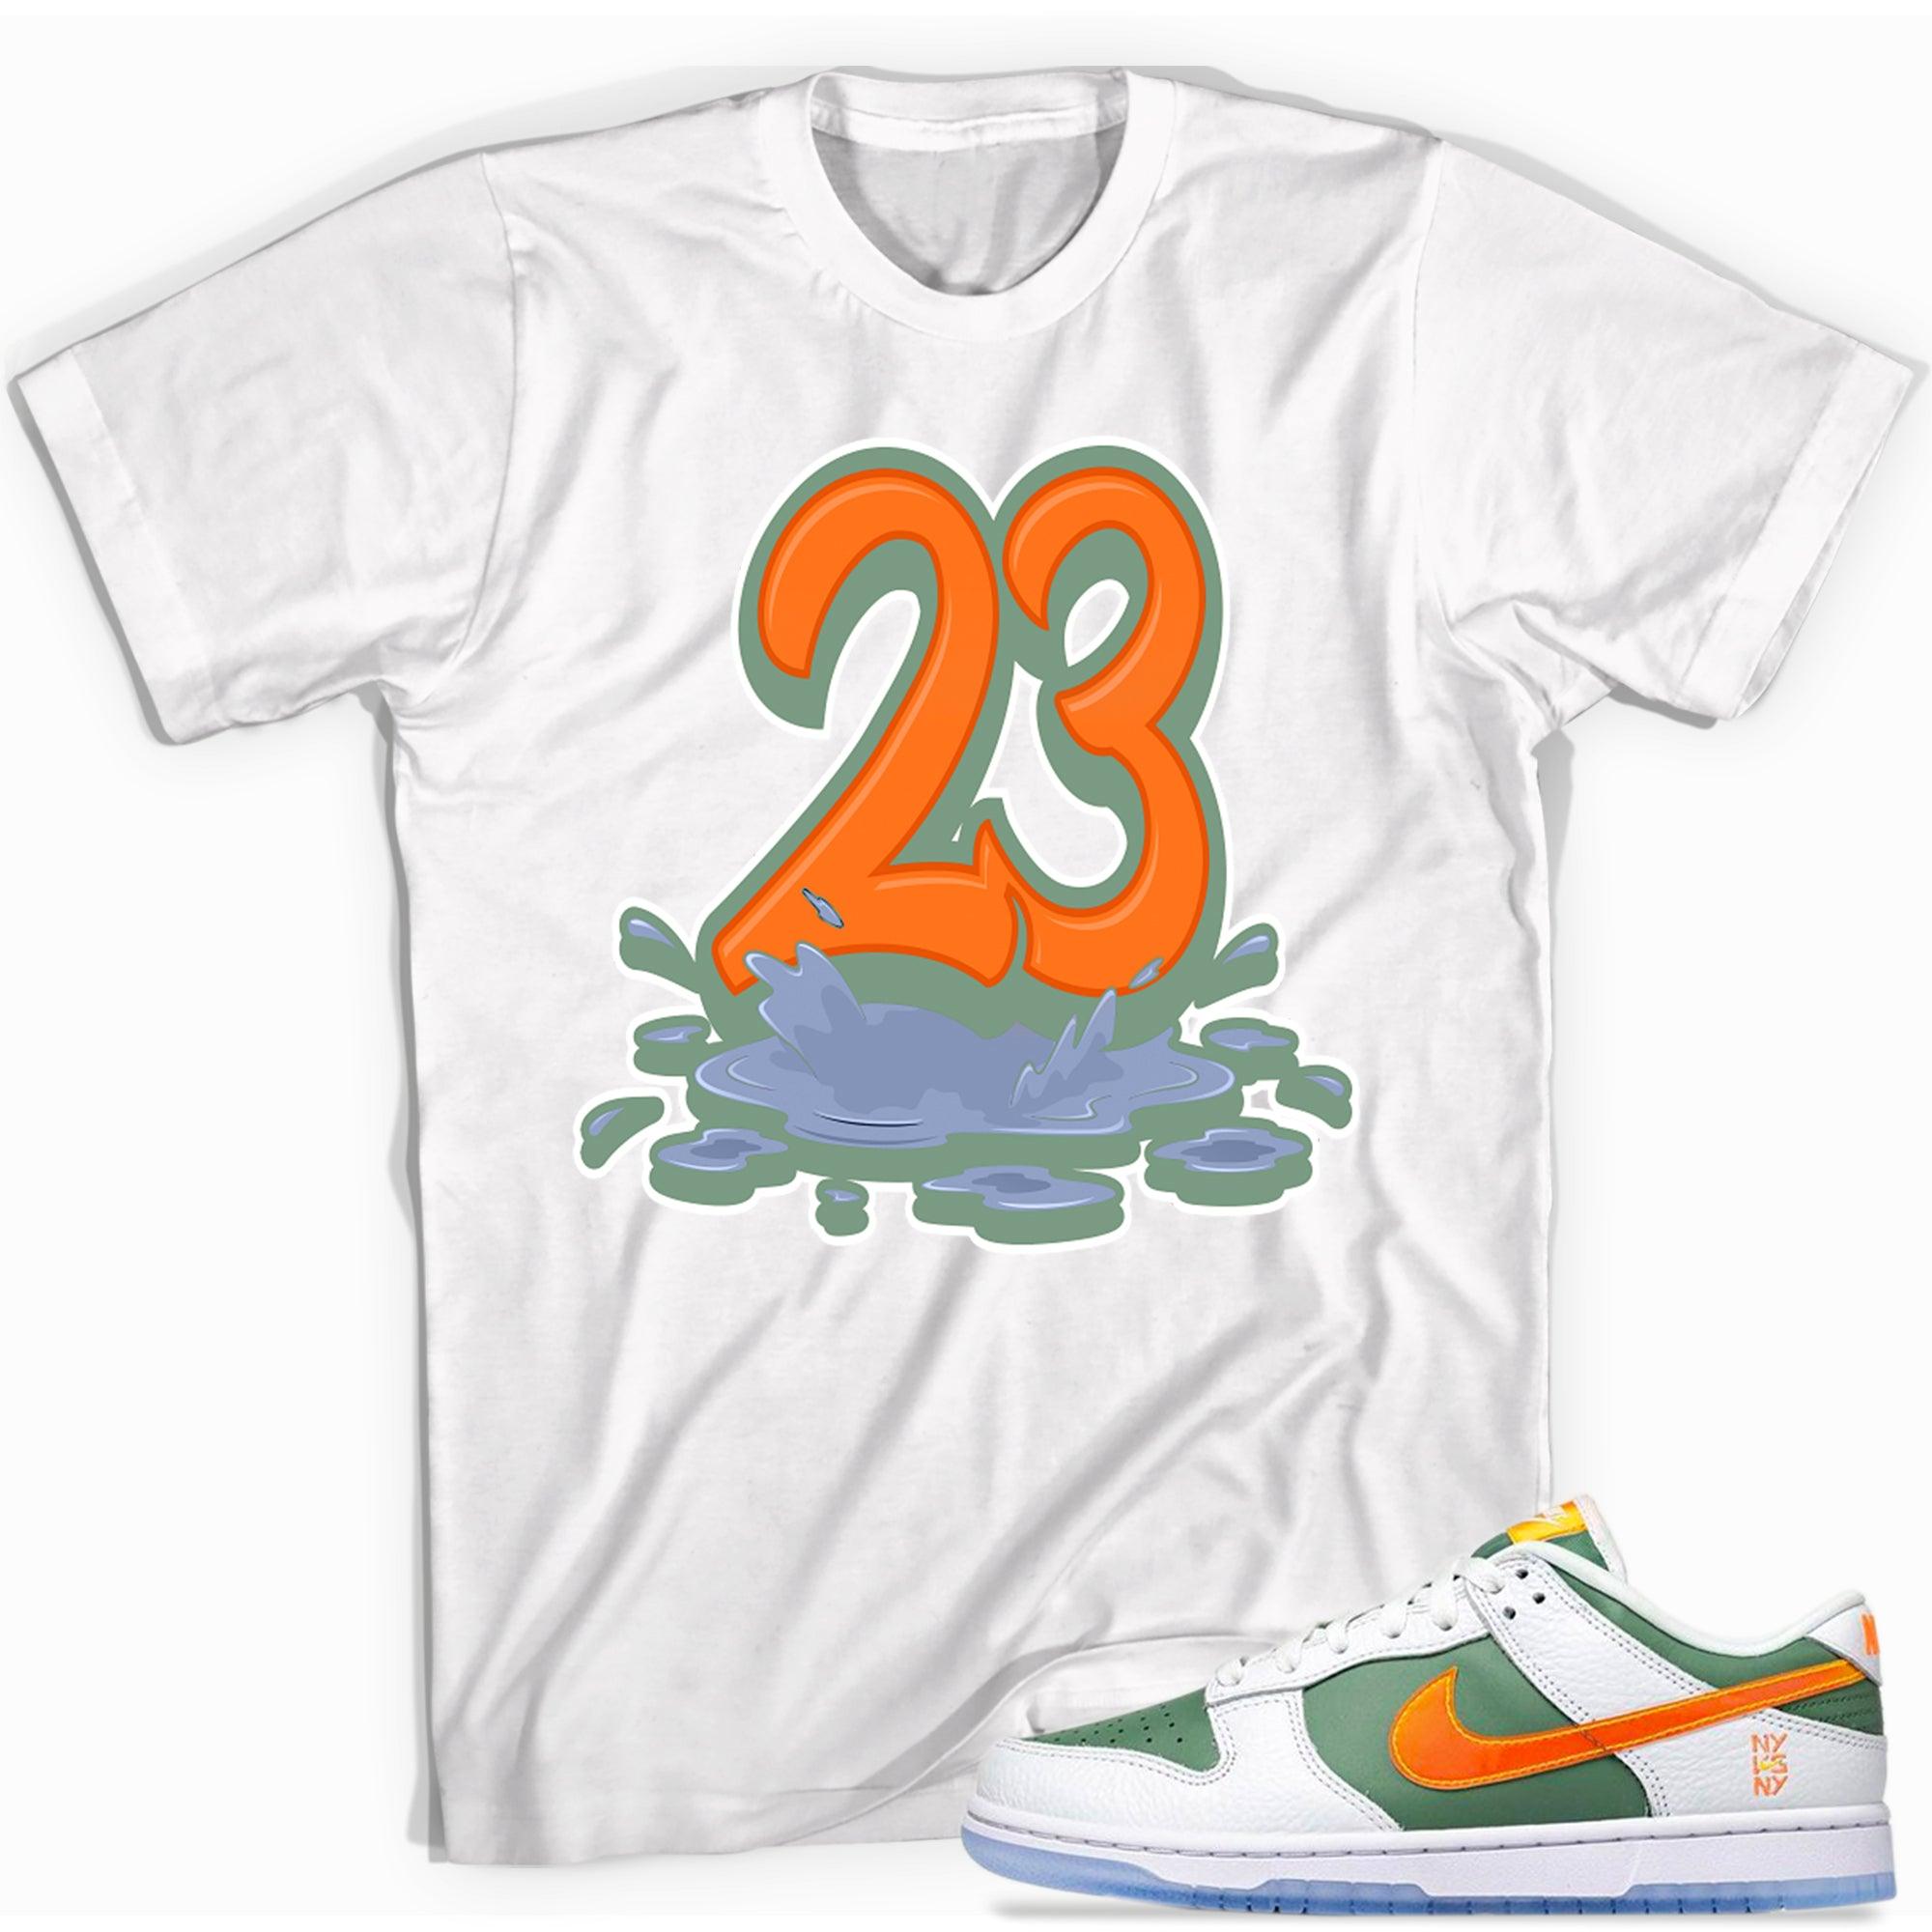 Number 23 Melting Shirt Nike Dunk Low NY vs NY photo